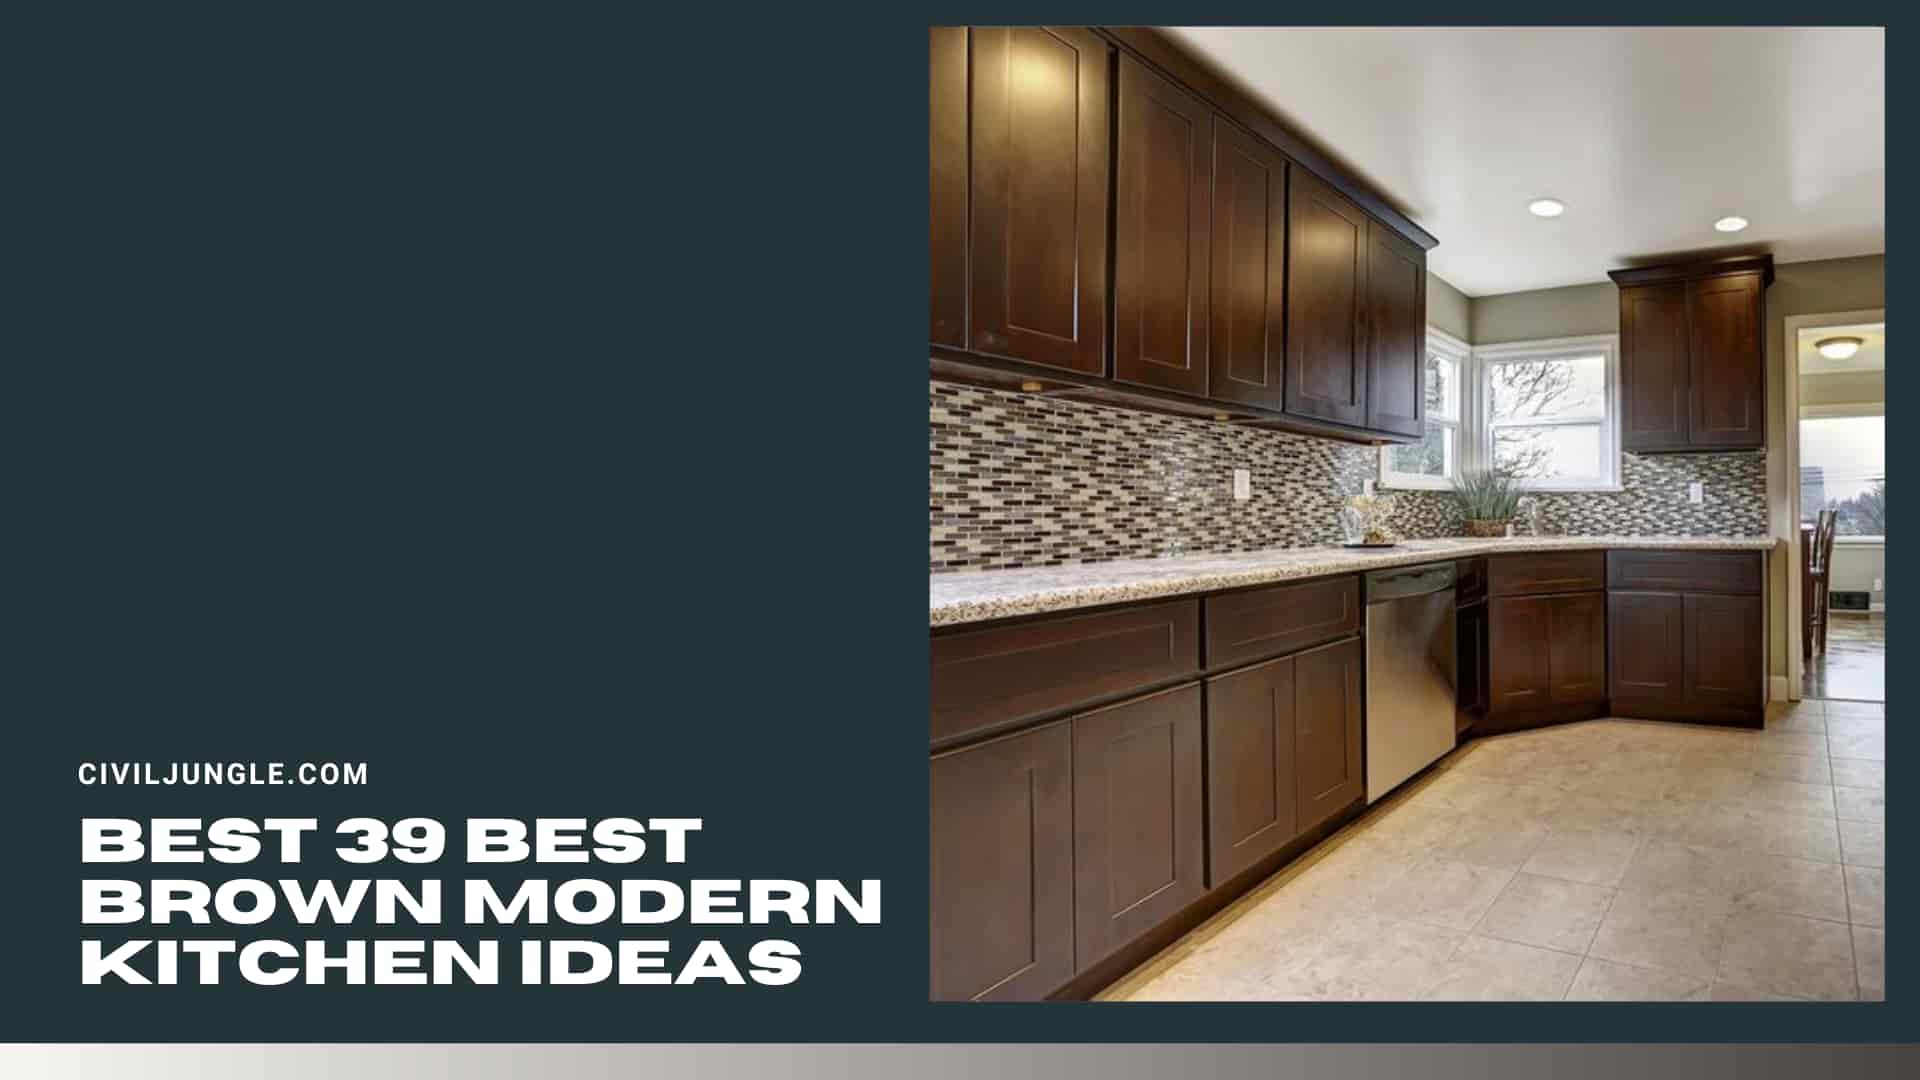 Best 39 Best Brown Modern Kitchen ideas